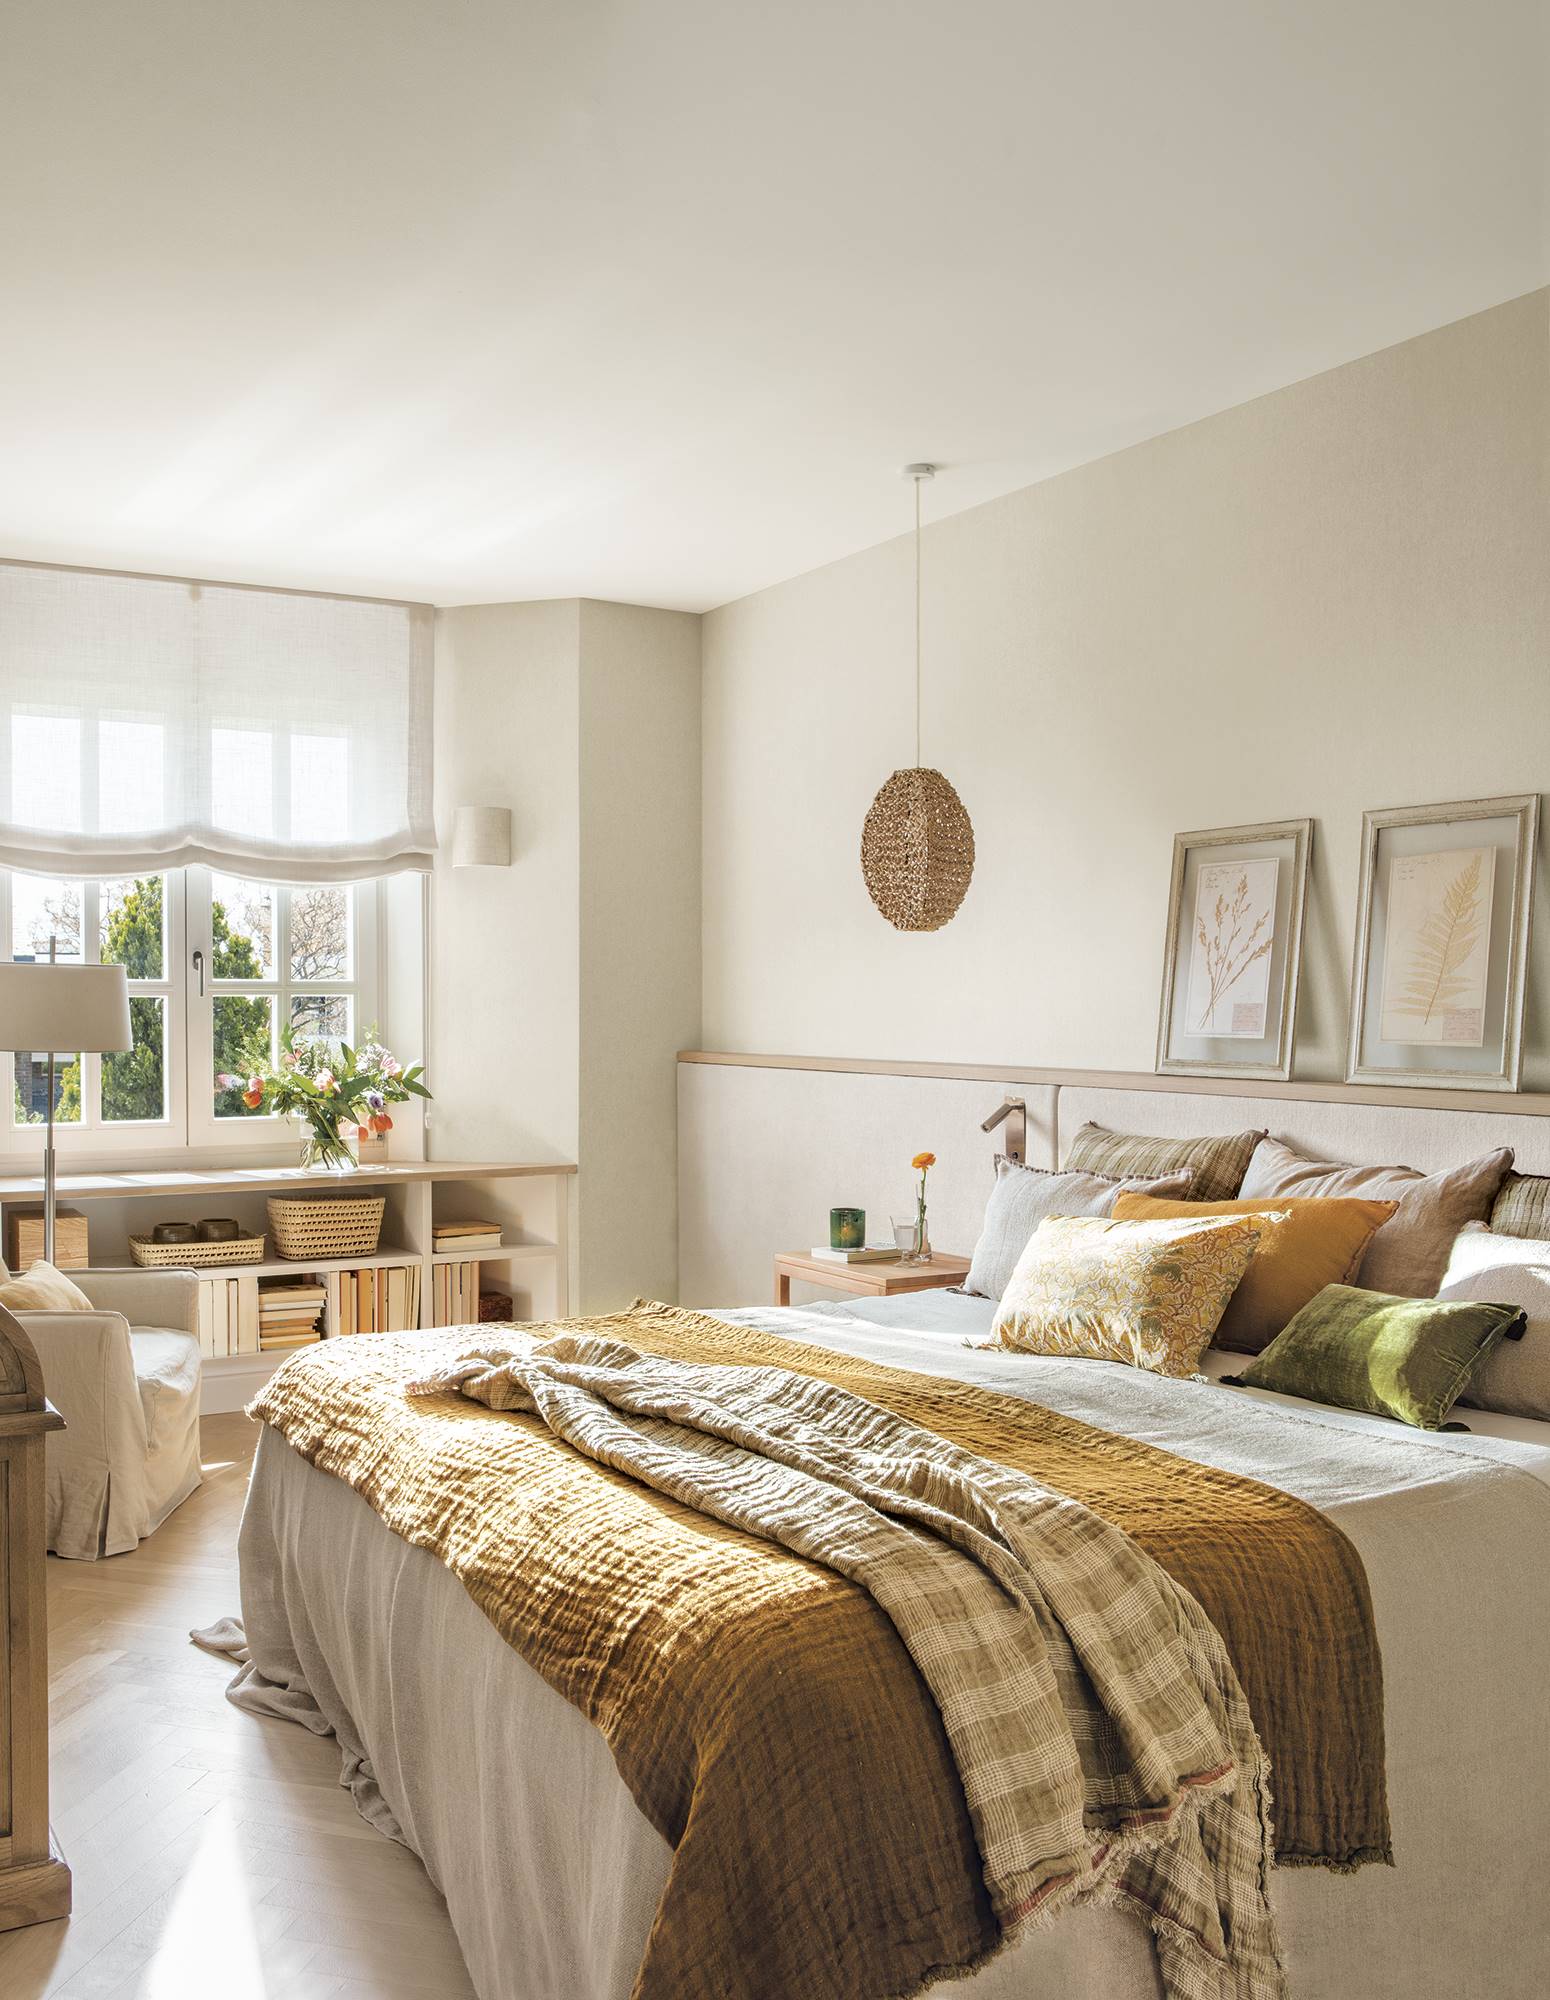 Dormitorio con cabecero a medida tapizado con tela, papel pintado en paredes y librería a medida bajo la ventana.